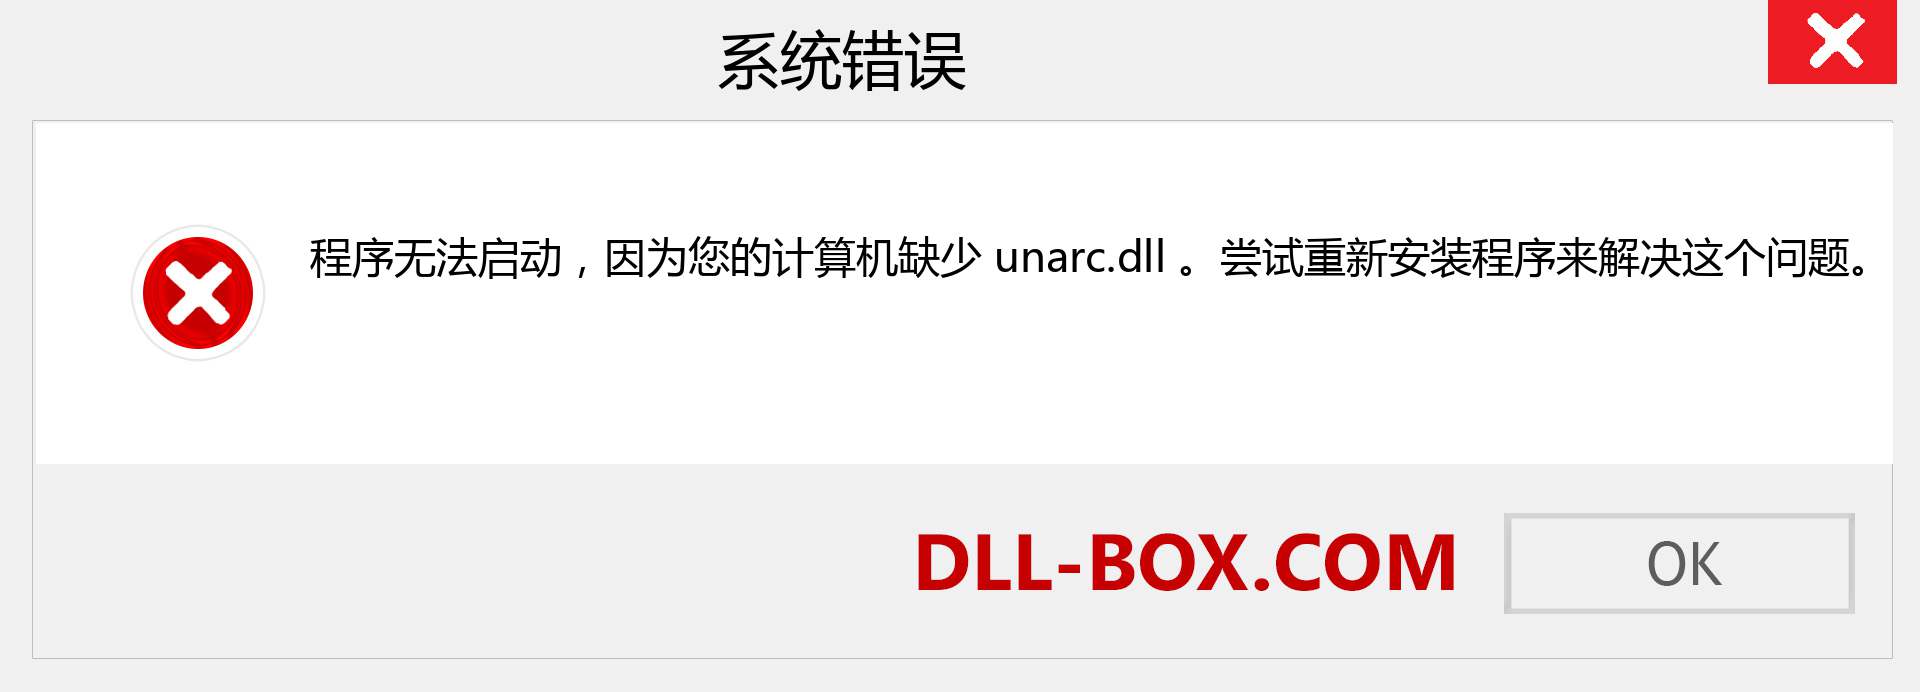 unarc.dll 文件丢失？。 适用于 Windows 7、8、10 的下载 - 修复 Windows、照片、图像上的 unarc dll 丢失错误